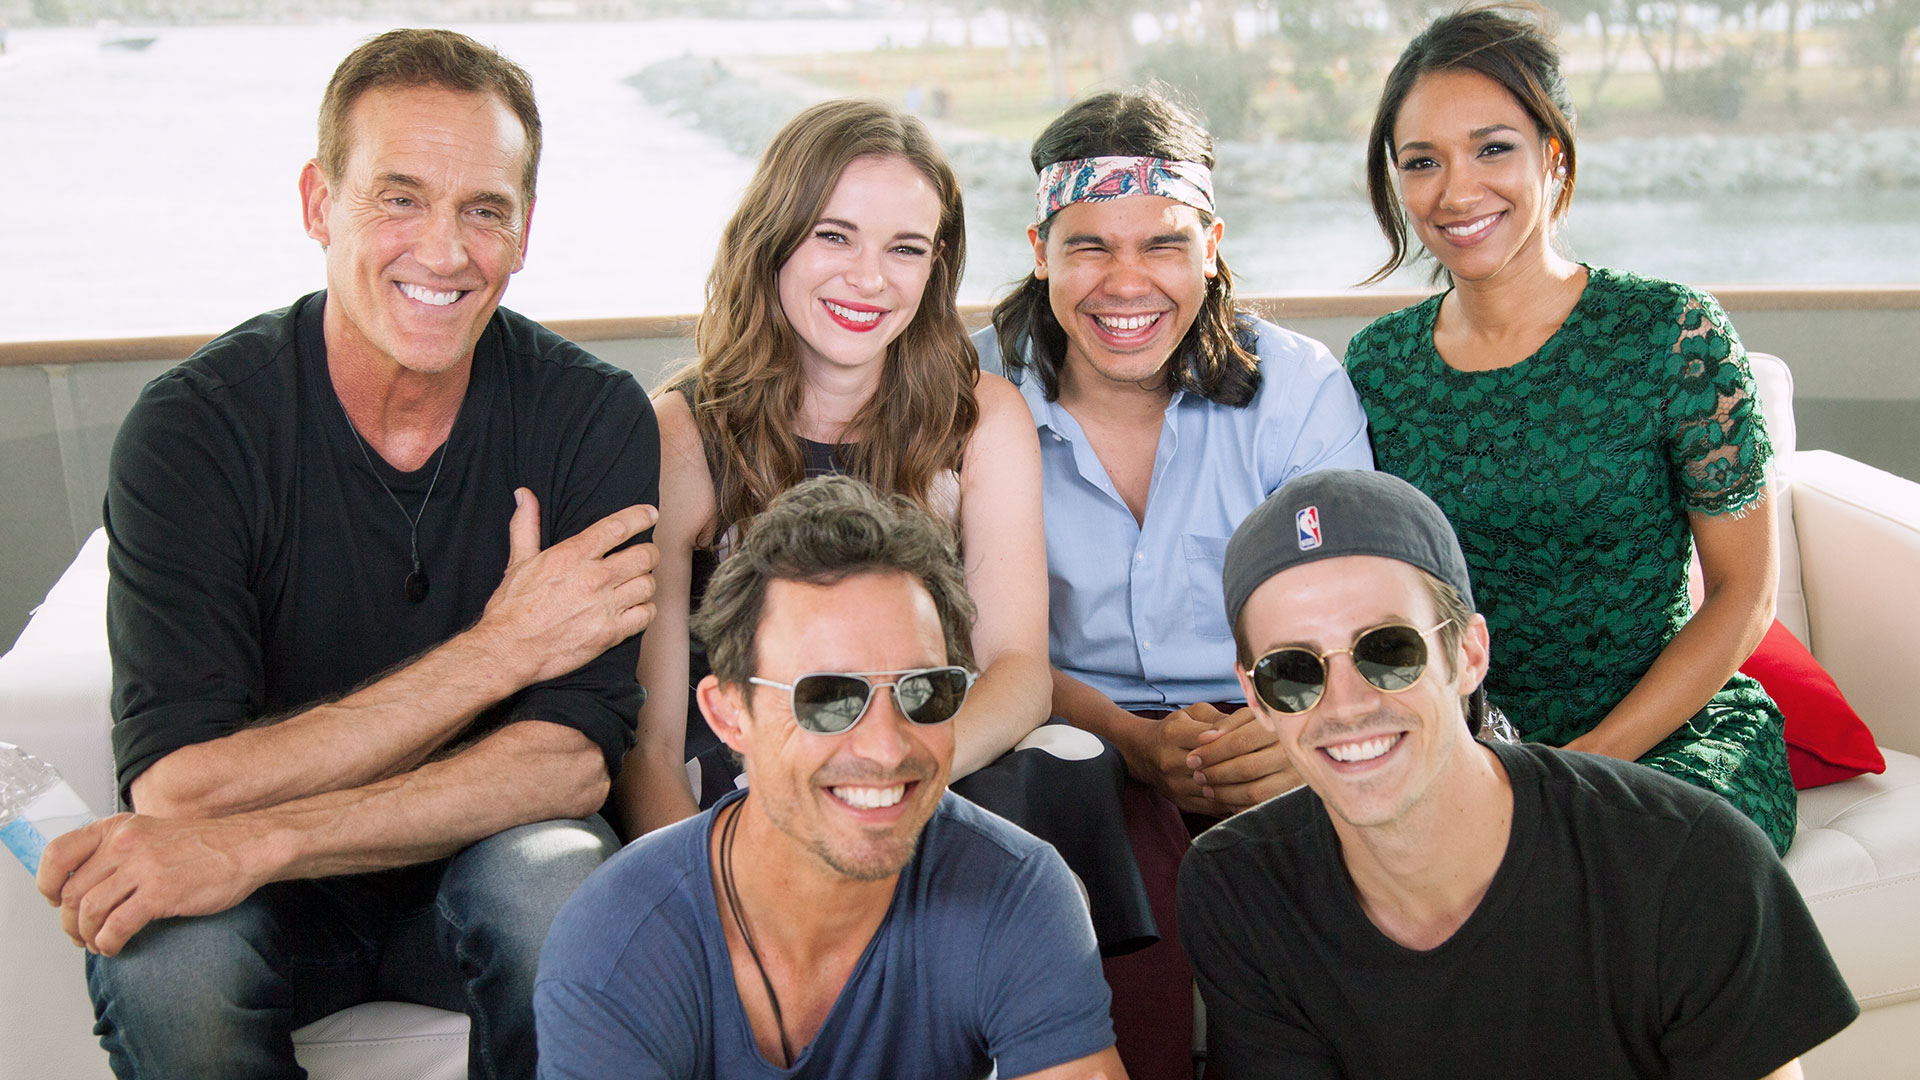 The Flash cast at Comic-Con